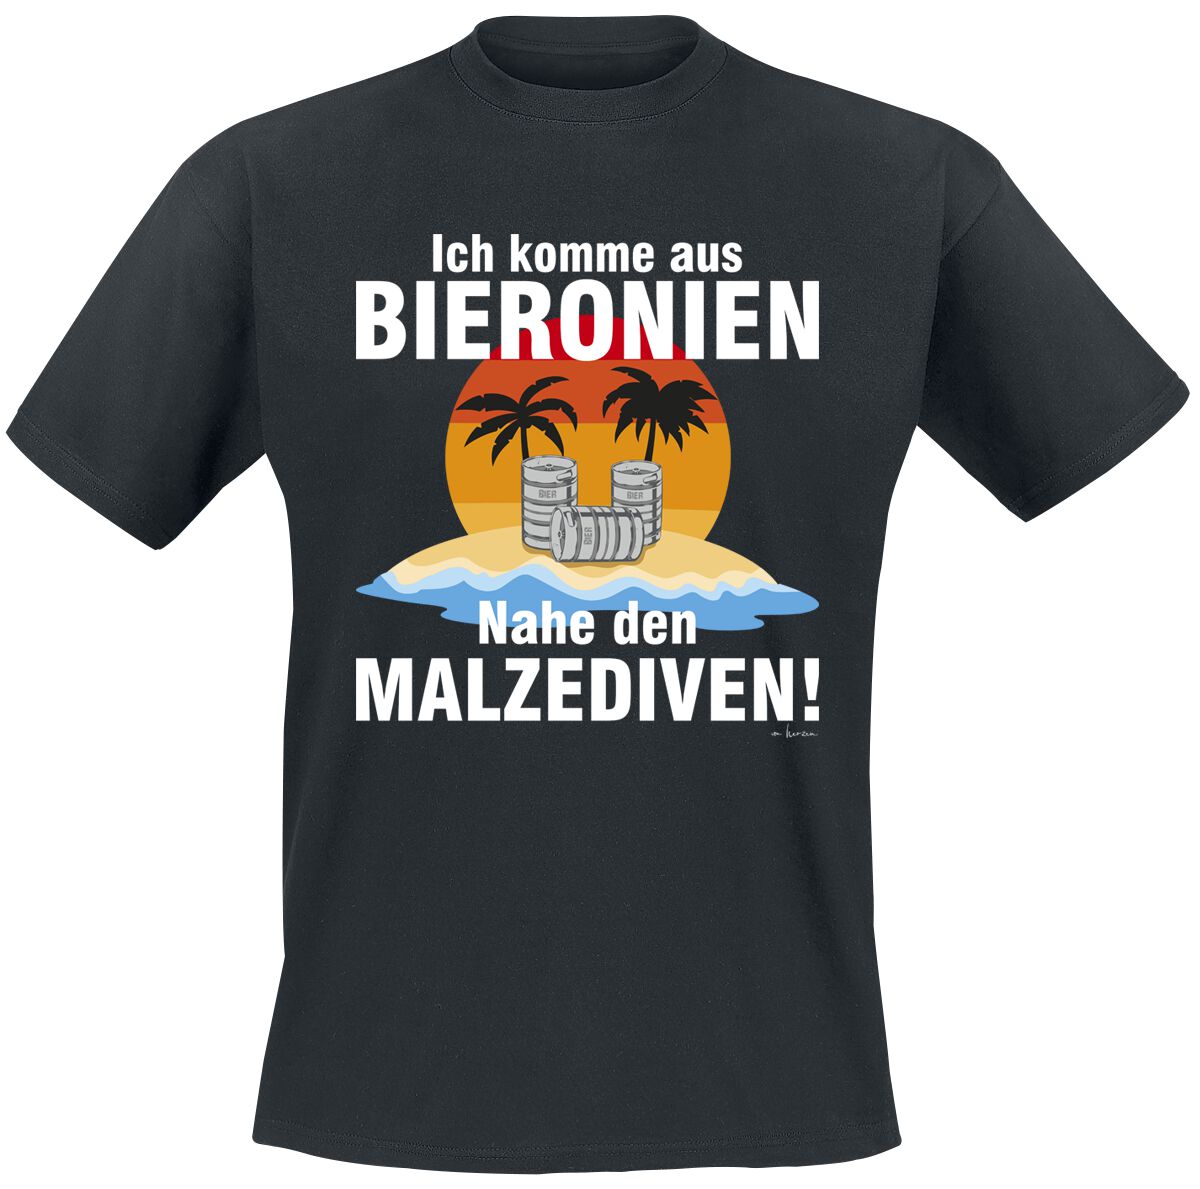 Alkohol & Party T-Shirt - Ich komme aus Bierkonien - M bis 5XL - für Männer - Größe 5XL - schwarz